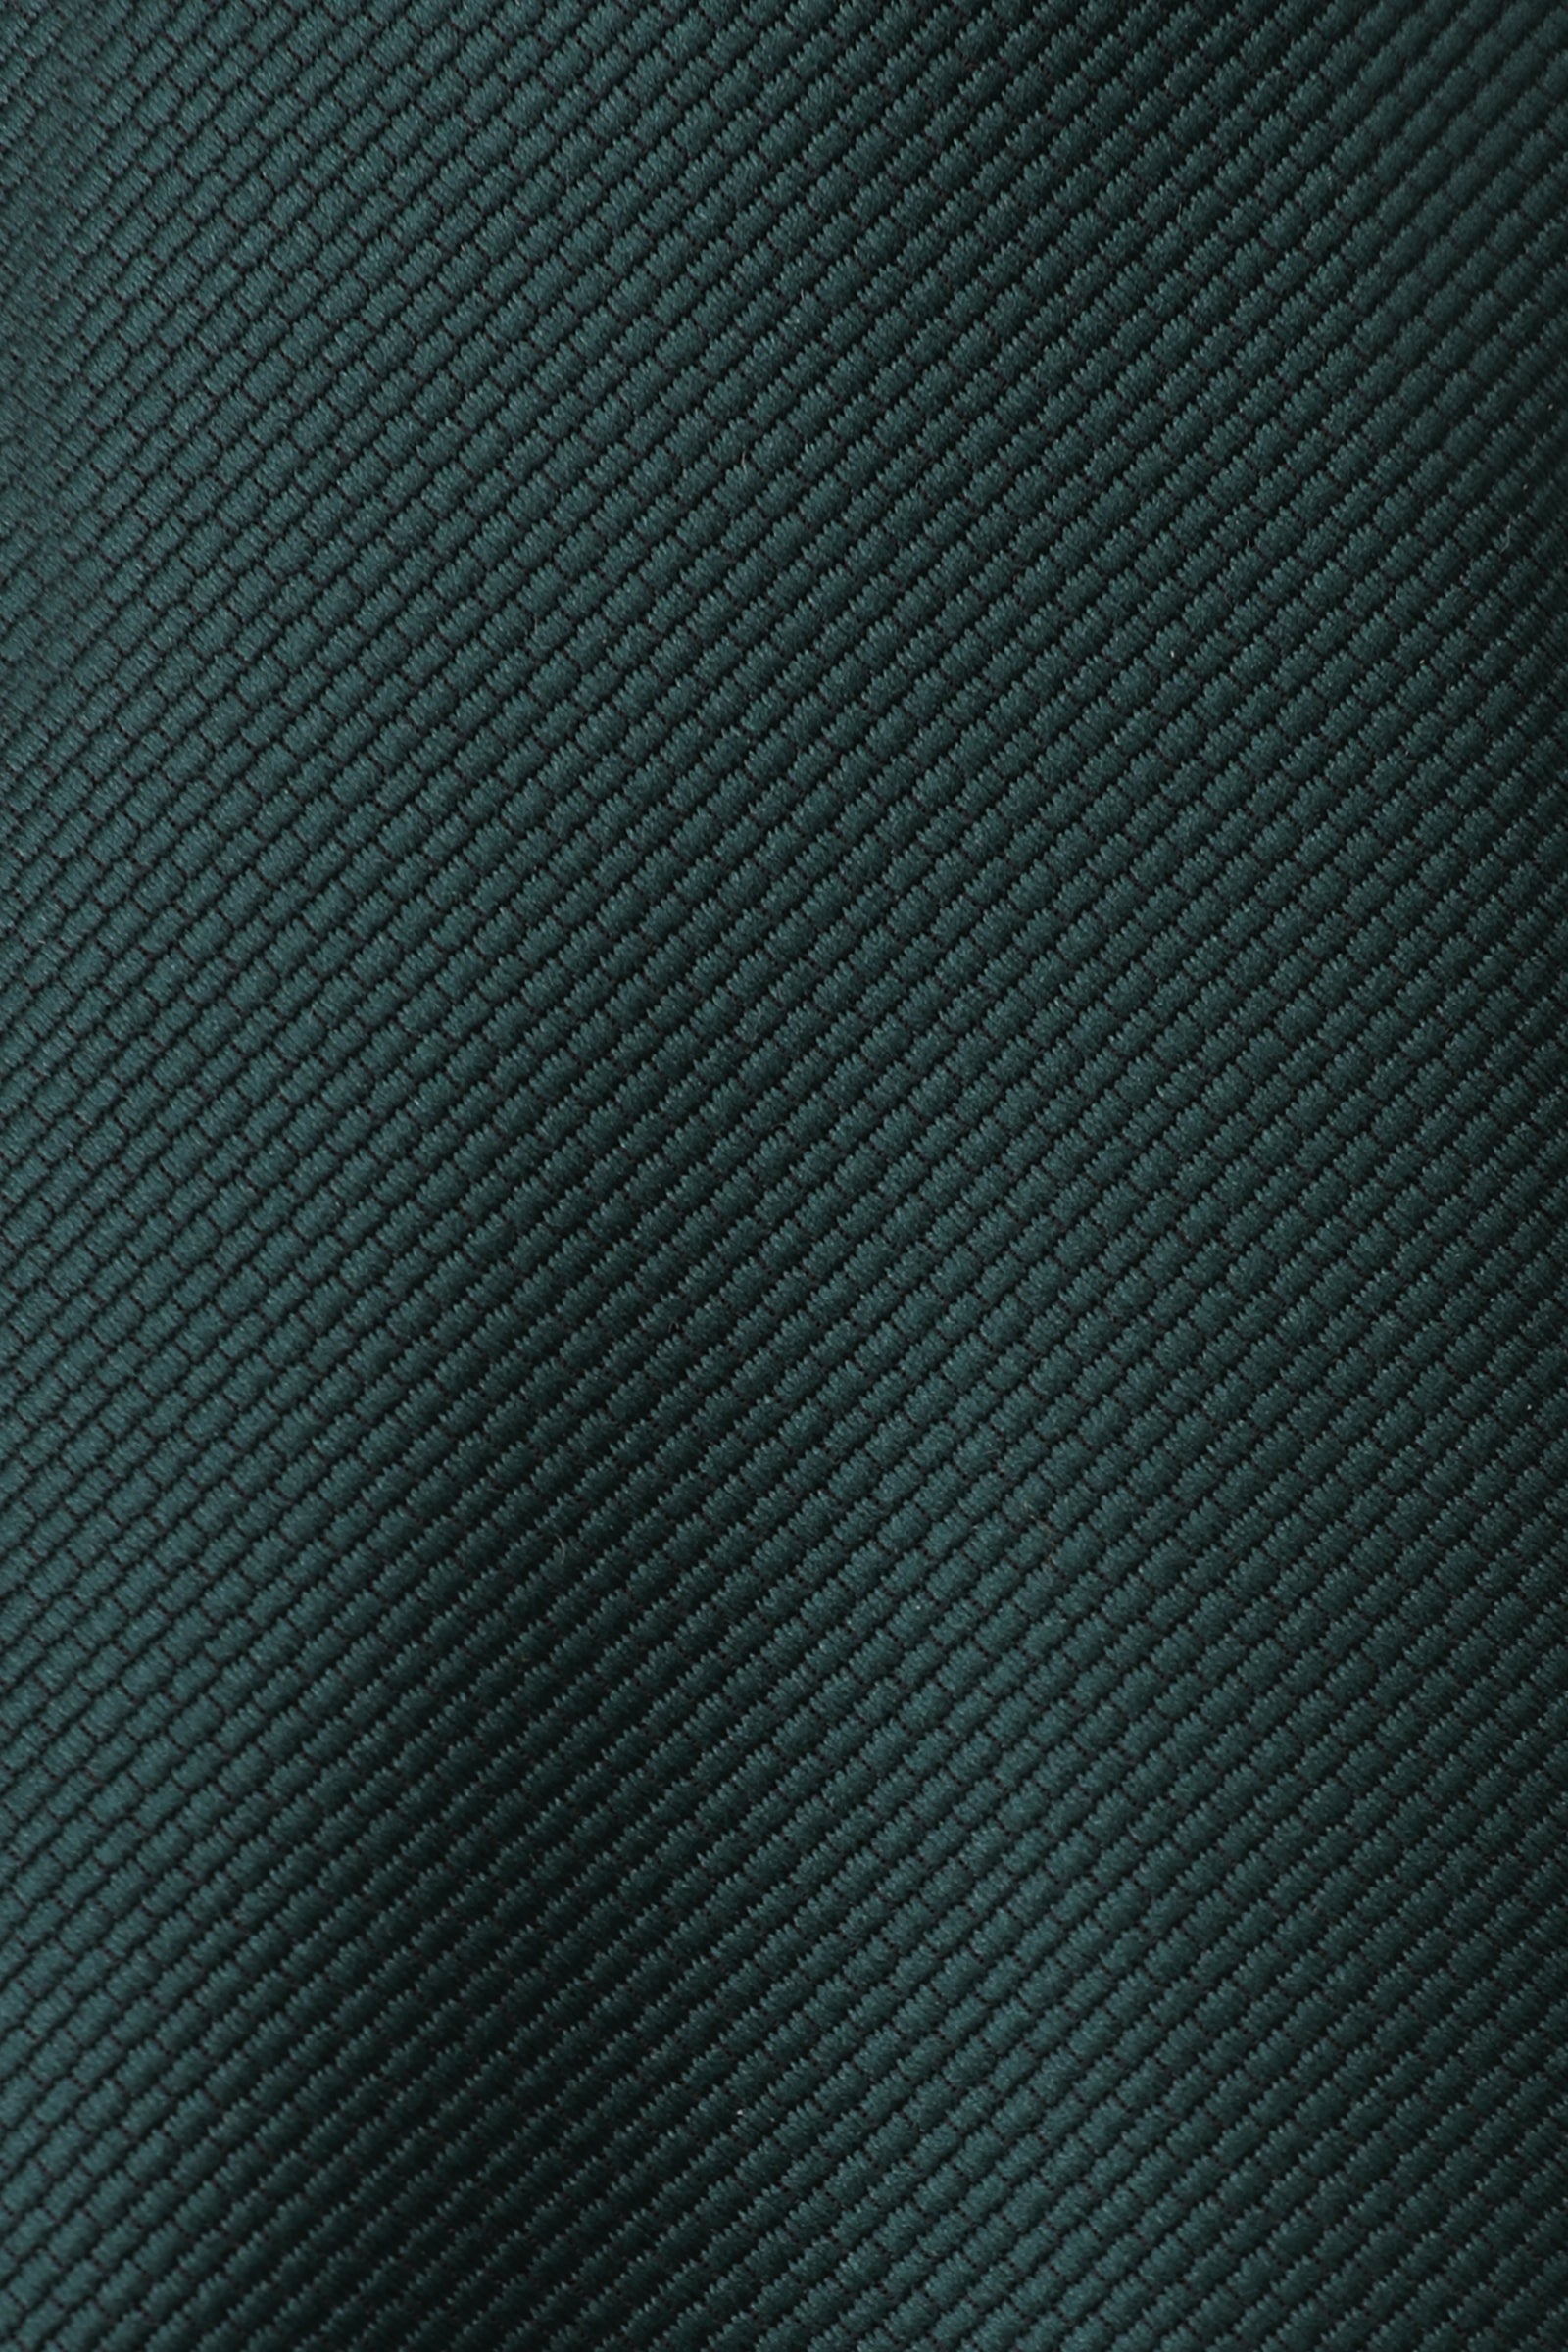 Dark Green Weave Kids Necktie Fabric